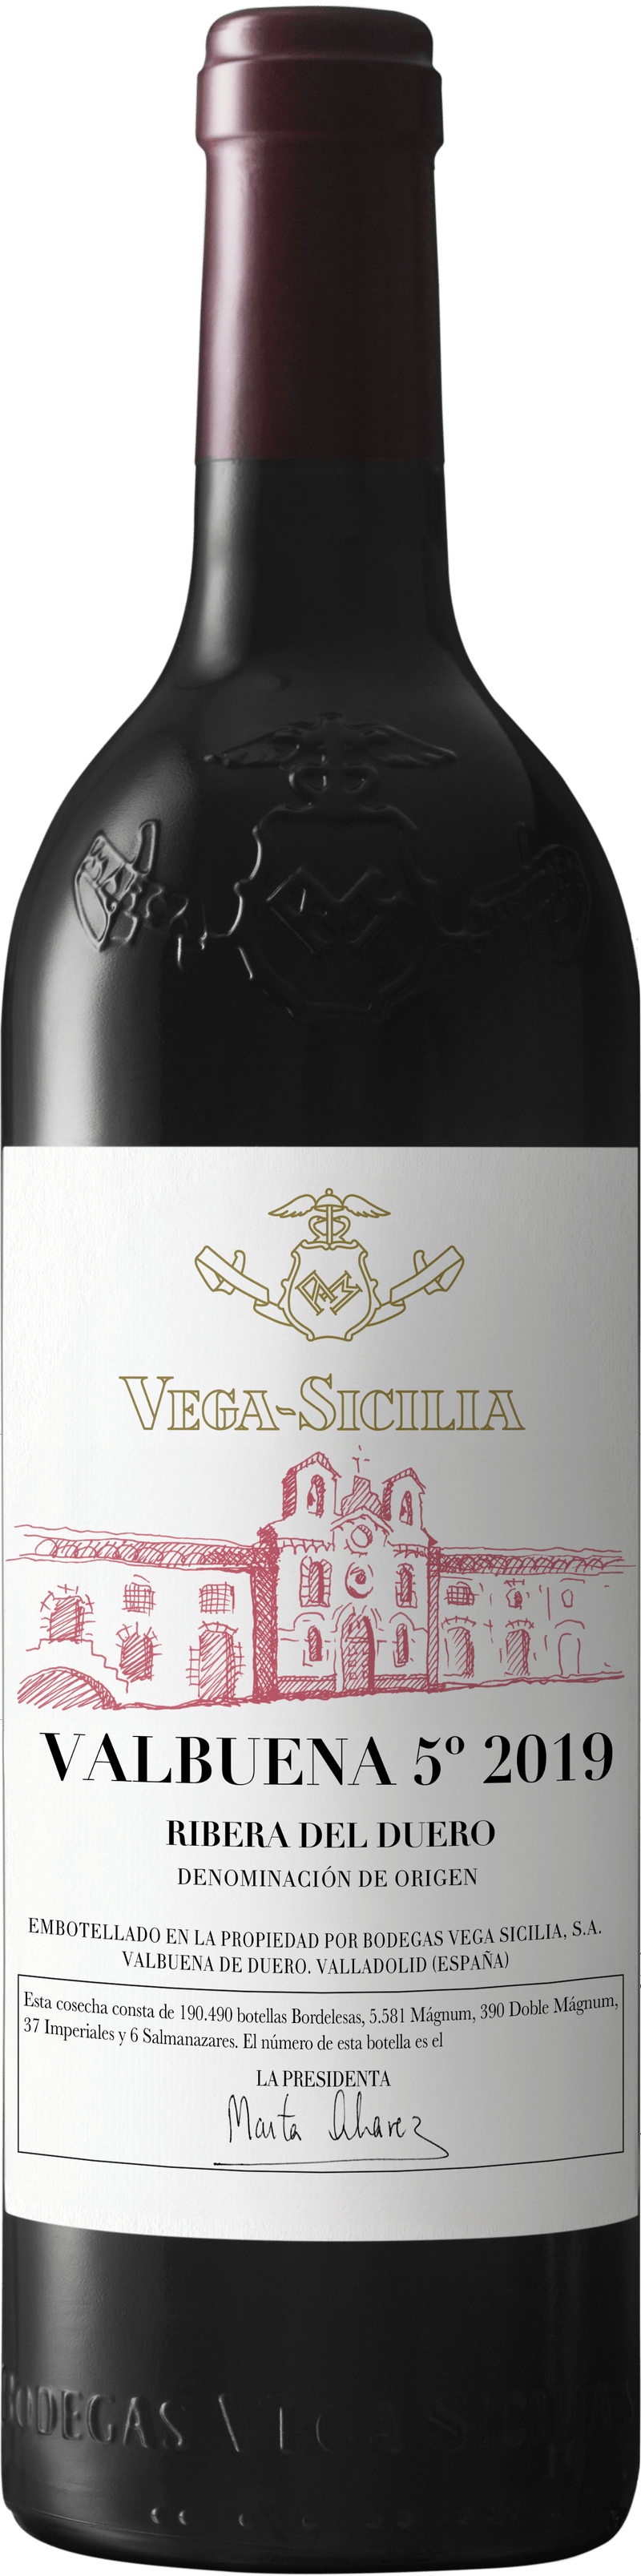 Vega Sicilia Valbuena 5° 2019 75cl